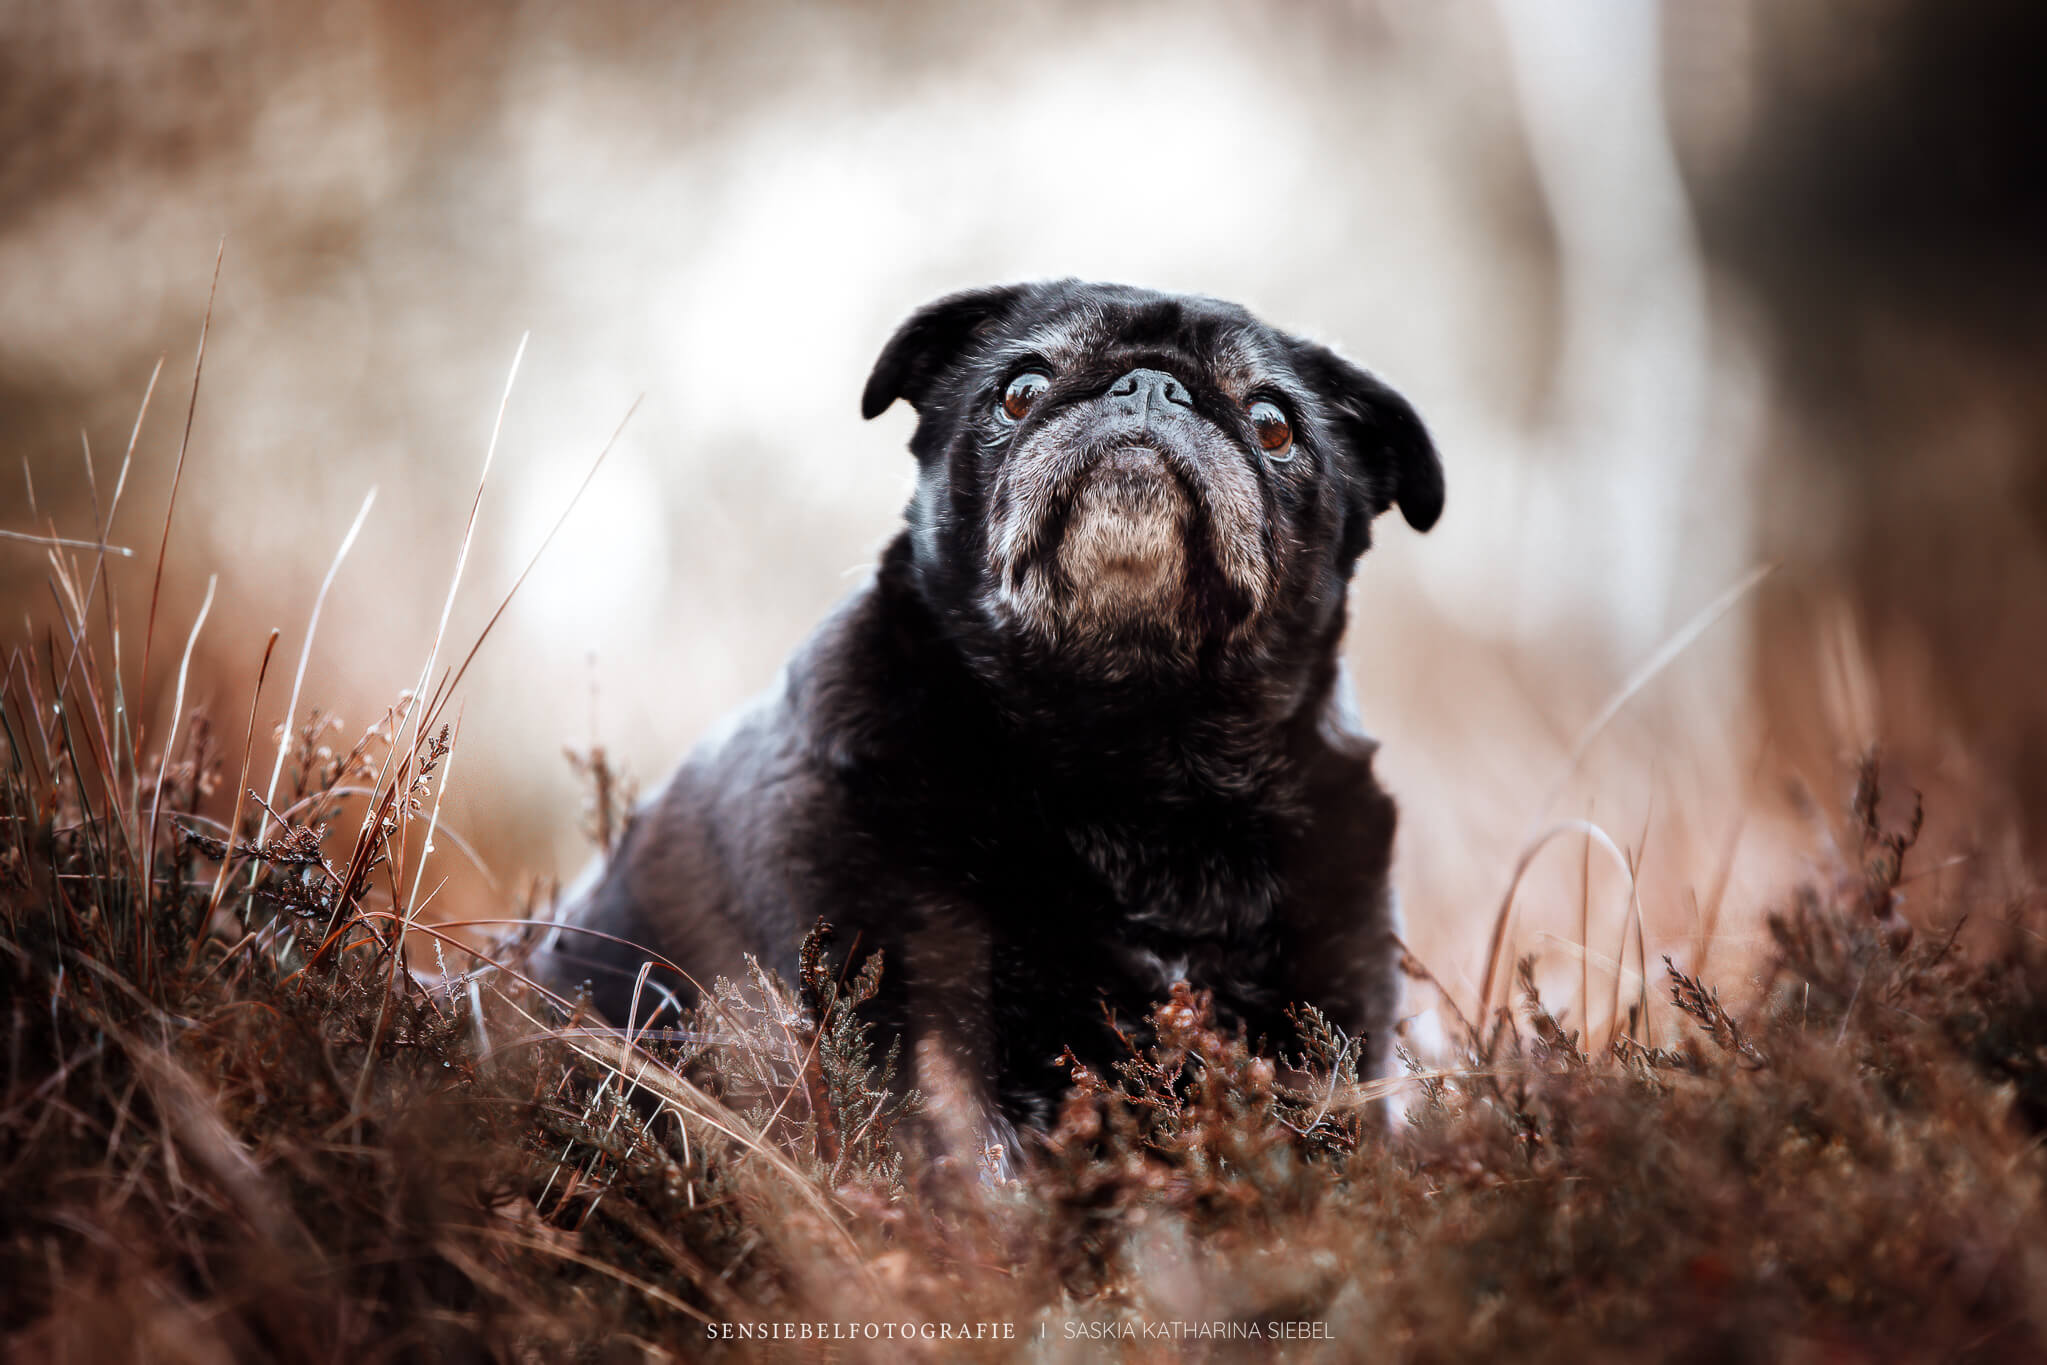 Regenbogenshooting Tierfotografie Sensiebelfotografie Hundefotografie